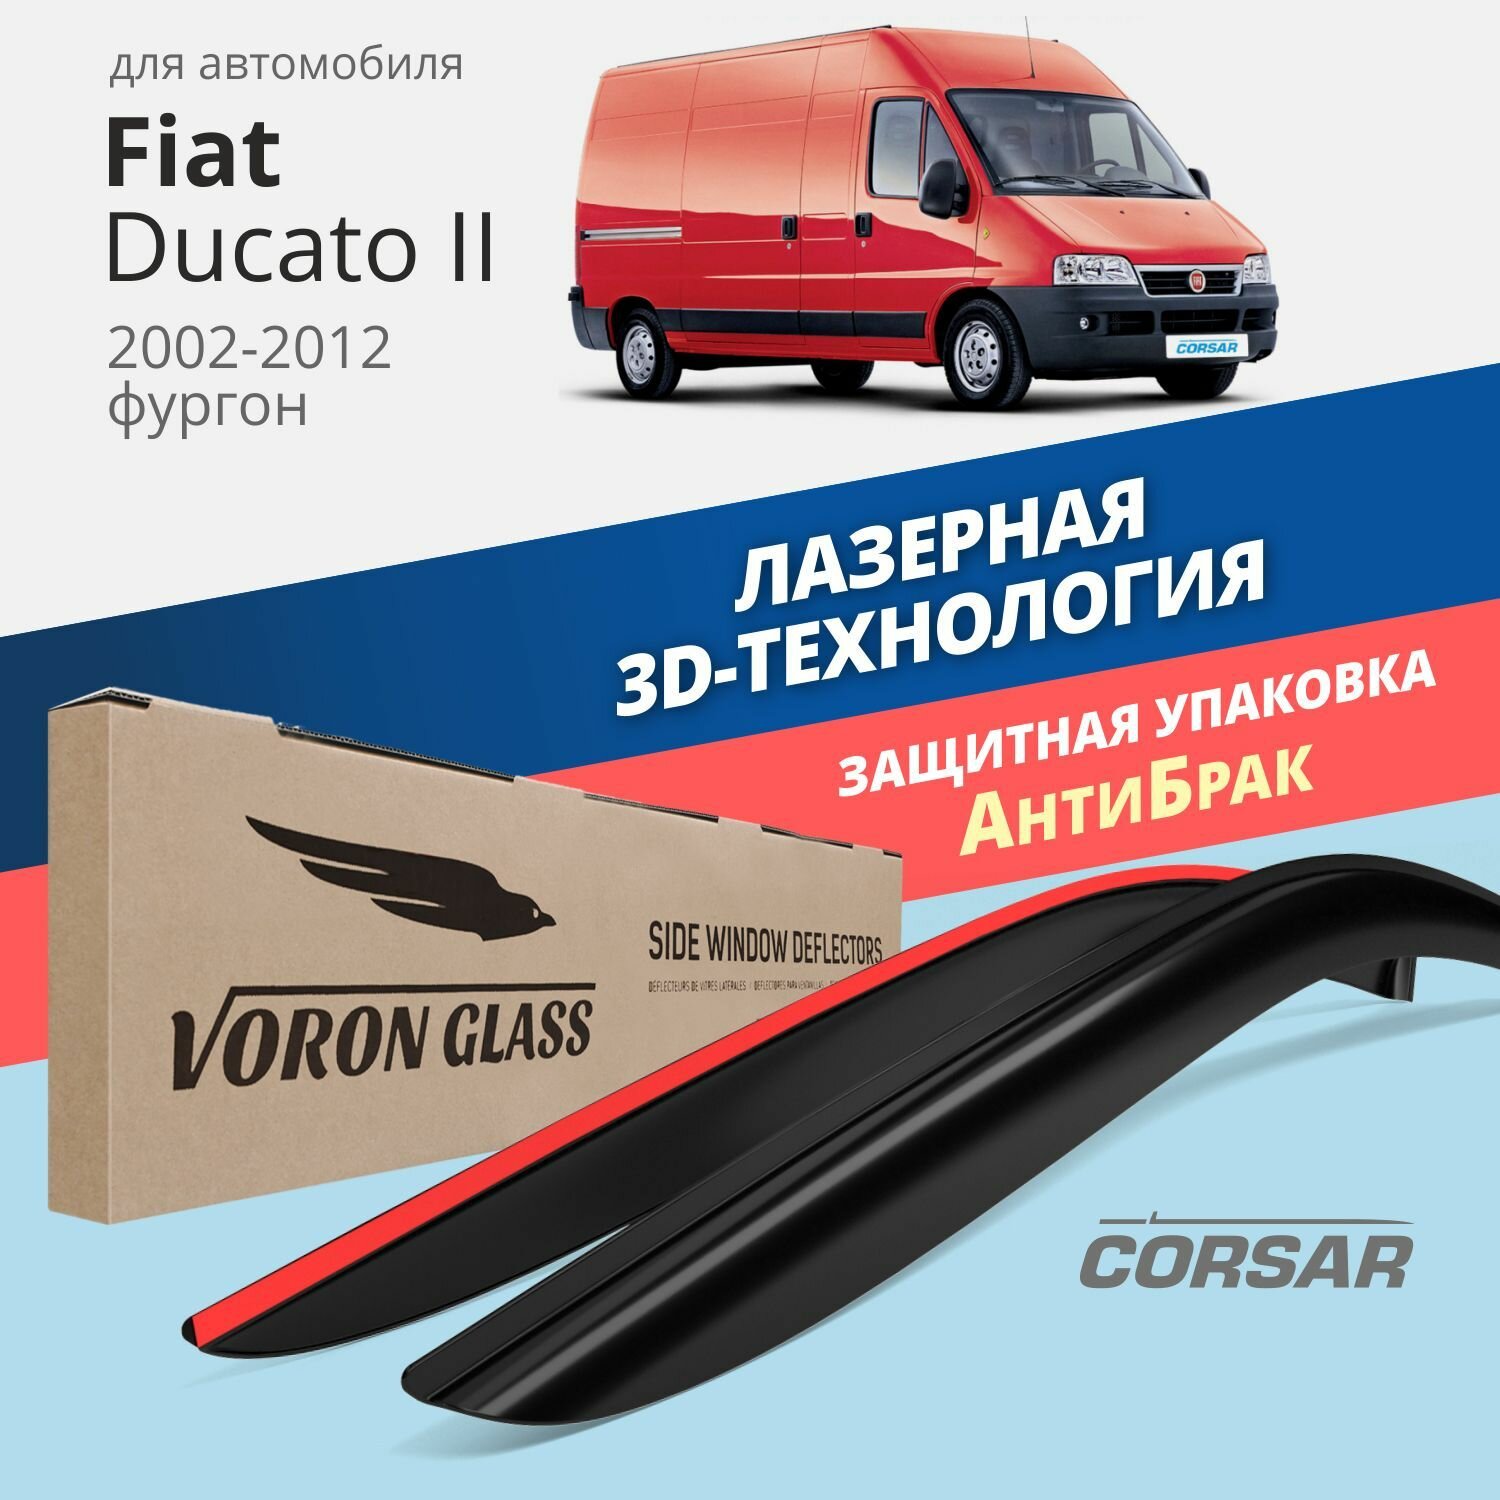 Дефлекторы окон Voron Glass серия Corsar для Fiat Ducato II 2002-2012 накладные 2 